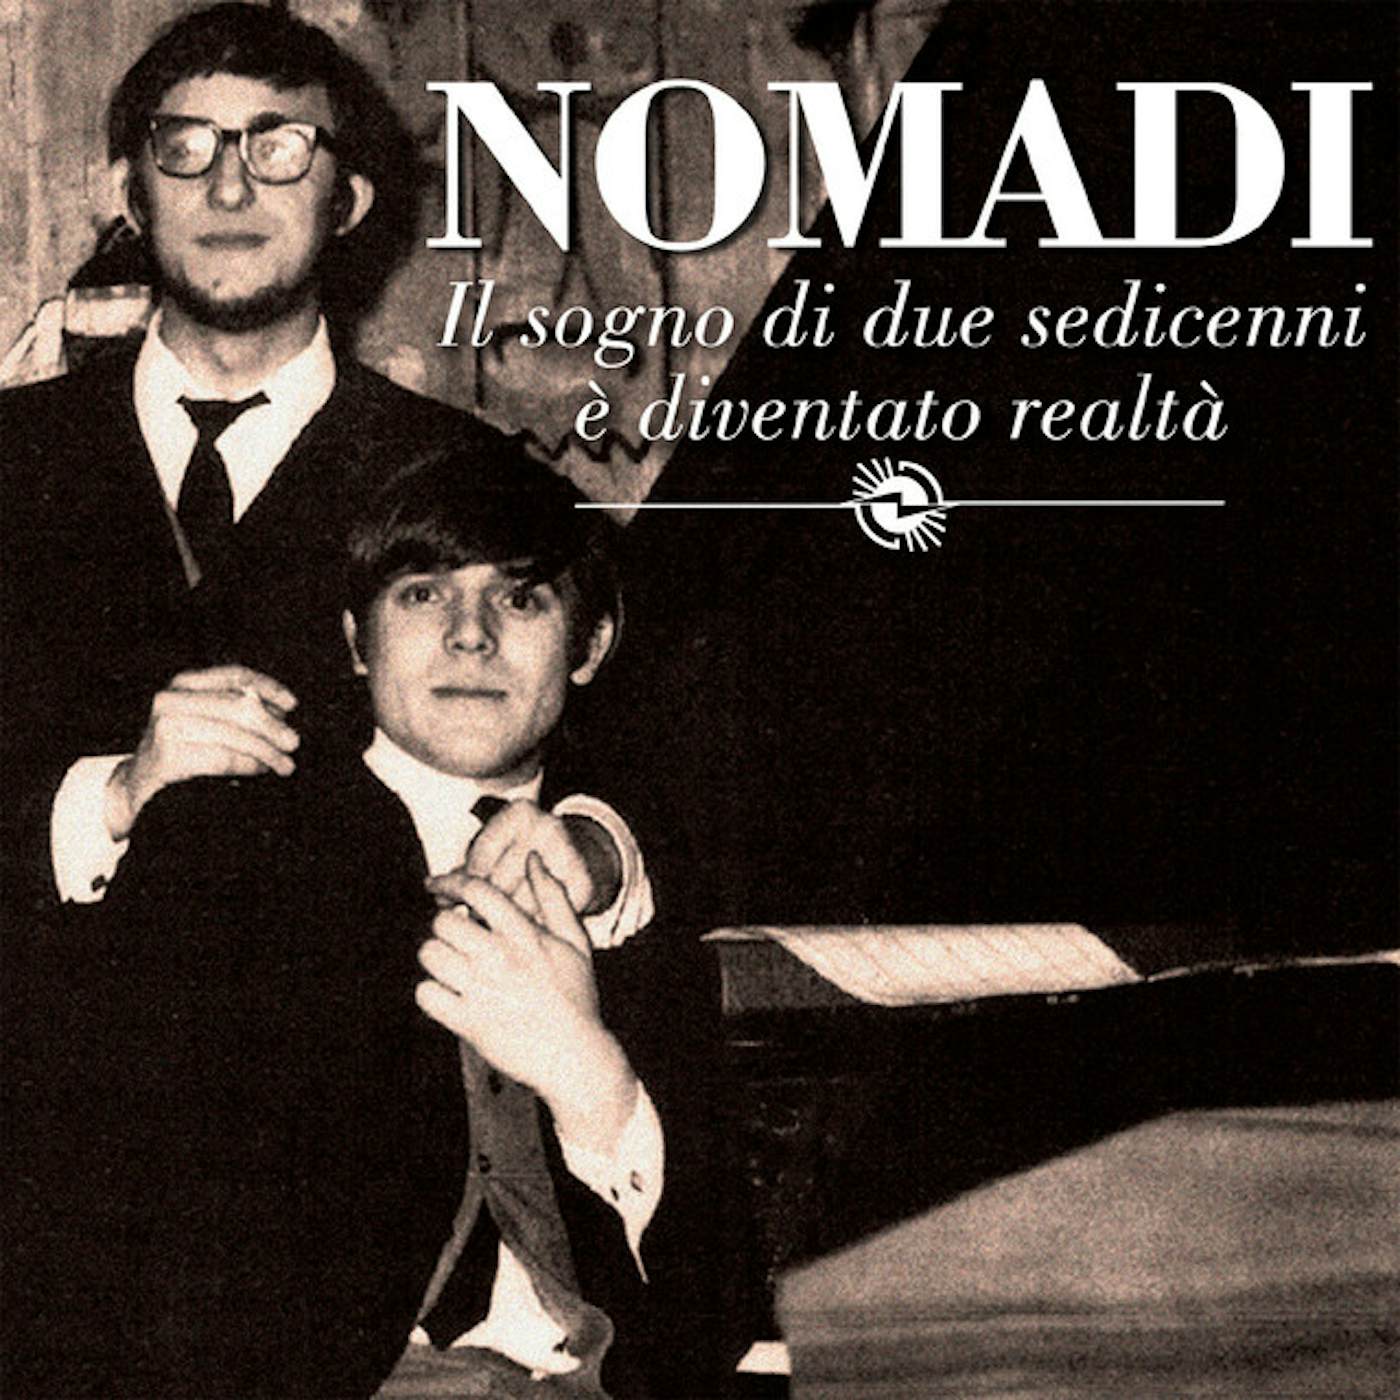 Nomadi IL SOGNO DI DUE SEDICENNI E DIVENTATO REALTA Vinyl Record